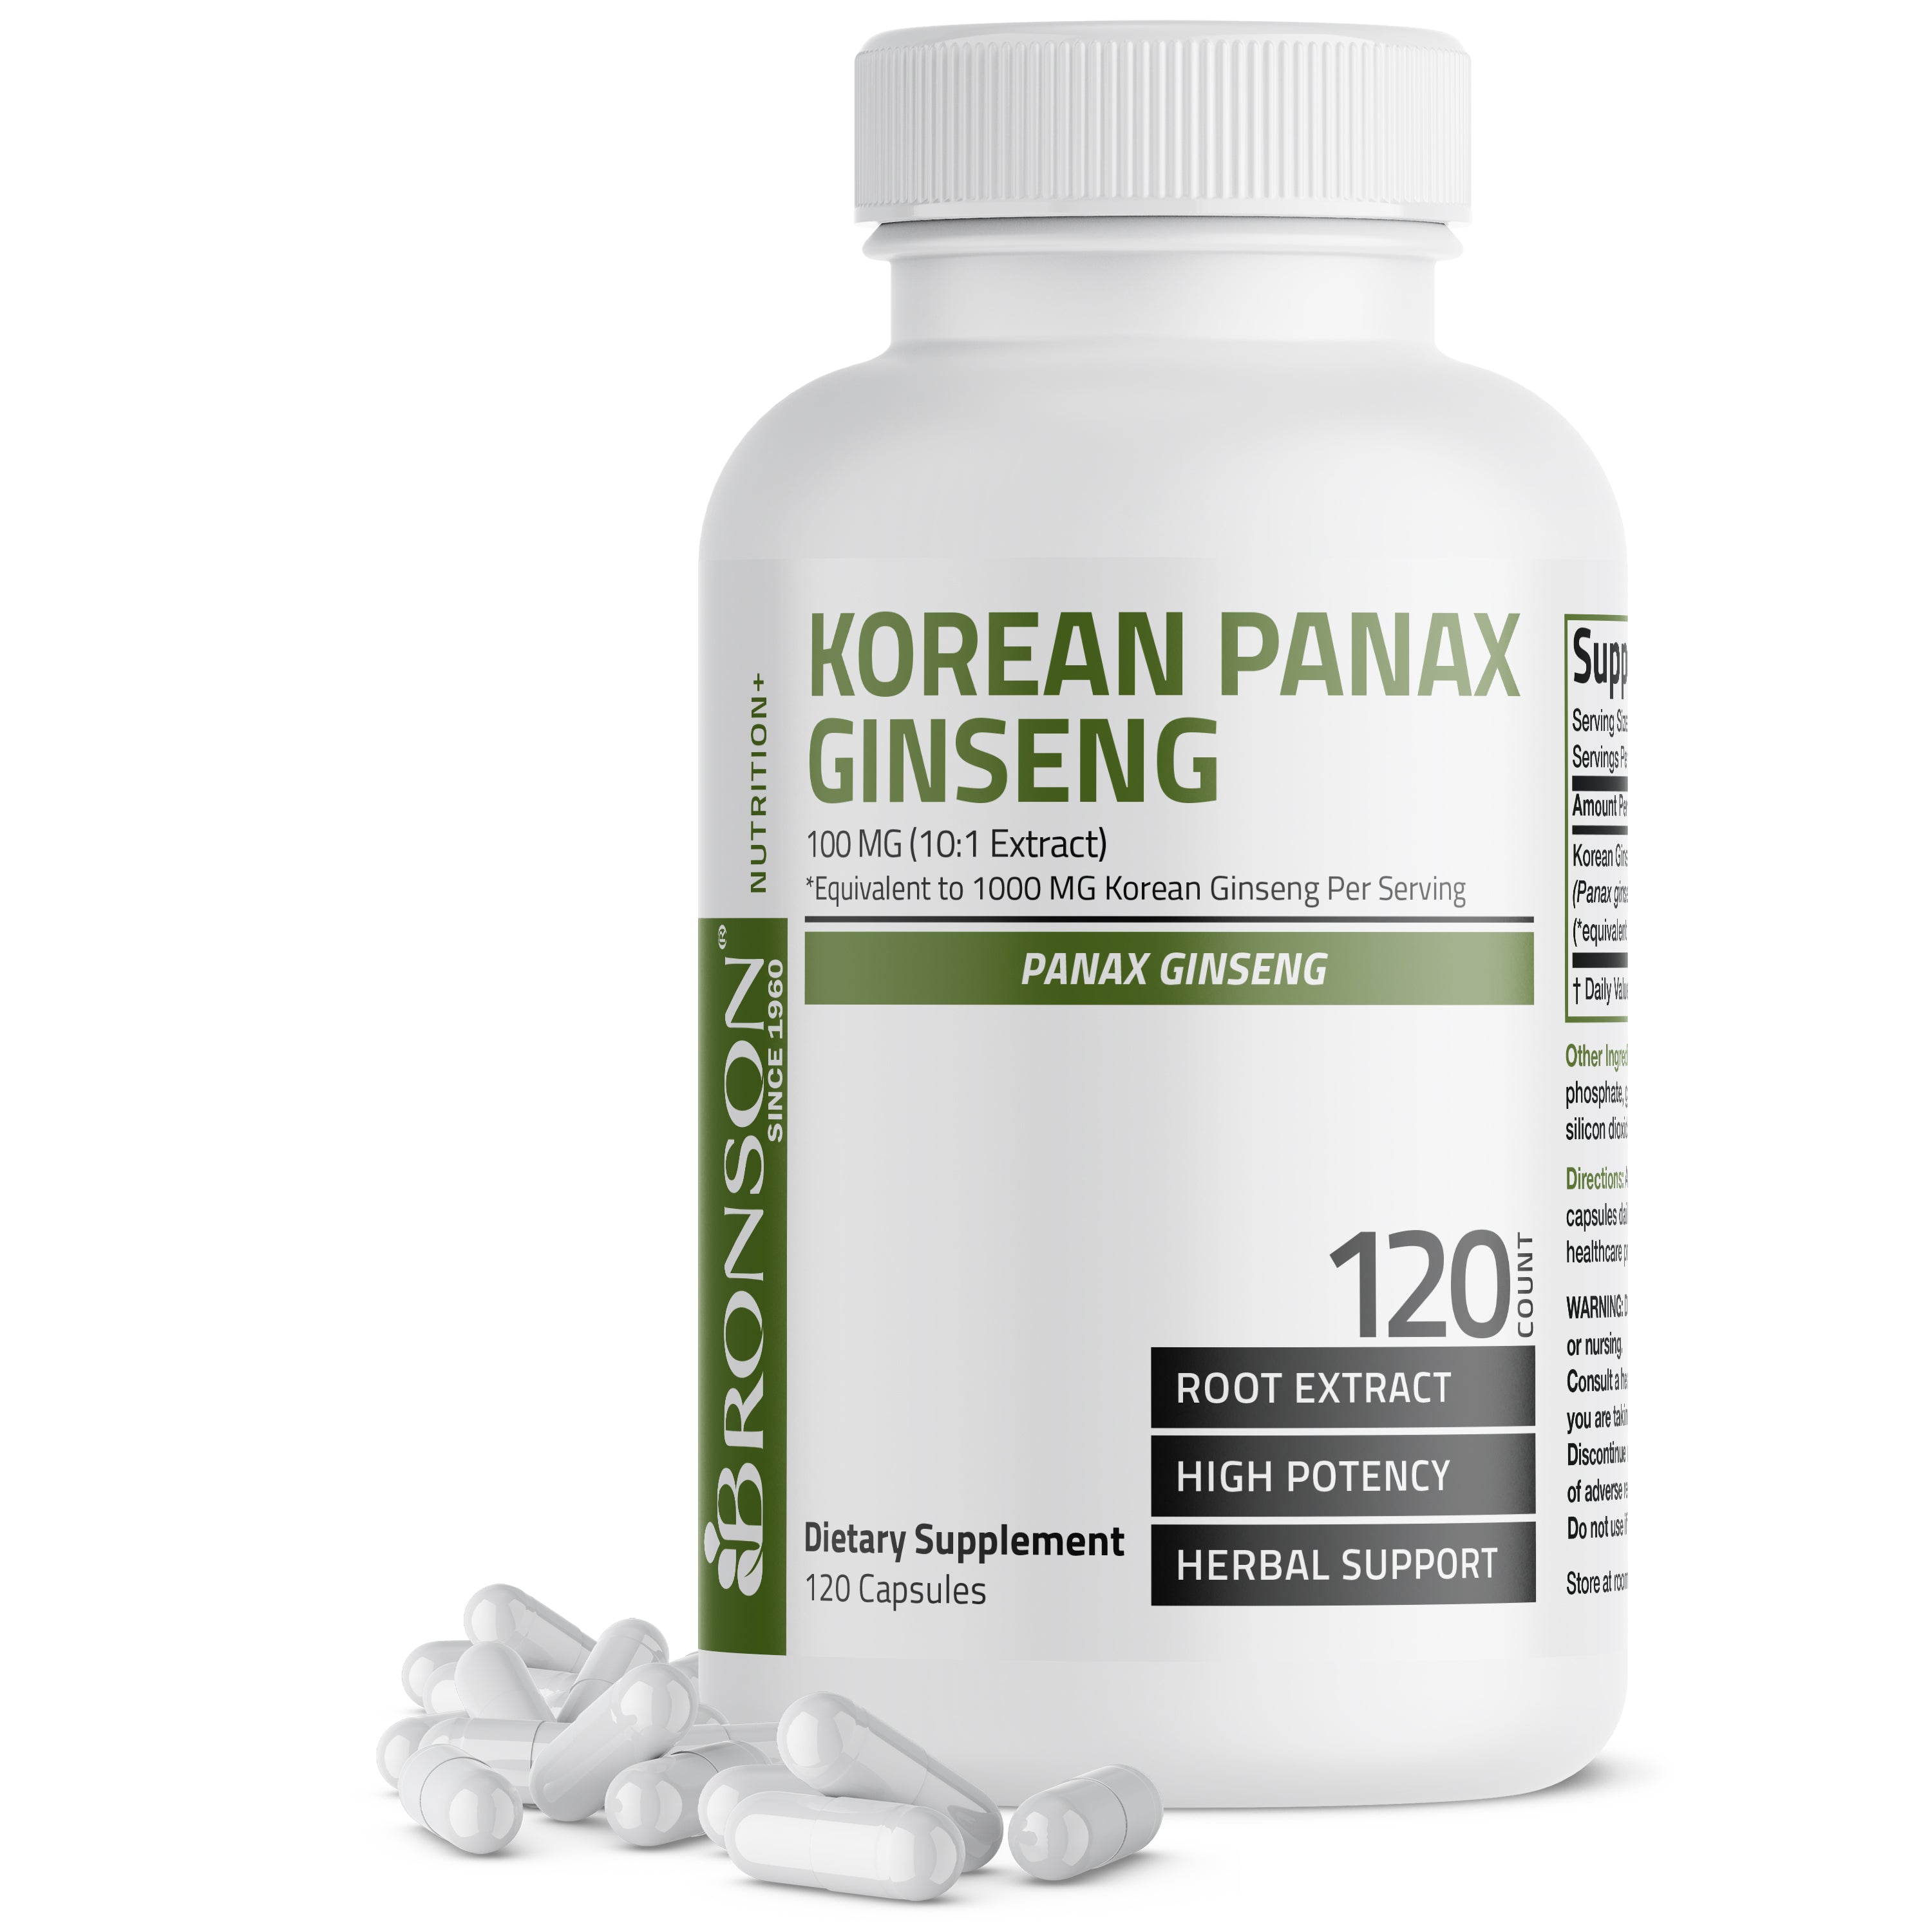 Korean Panax Ginseng - 1,000 mg view 8 of 15